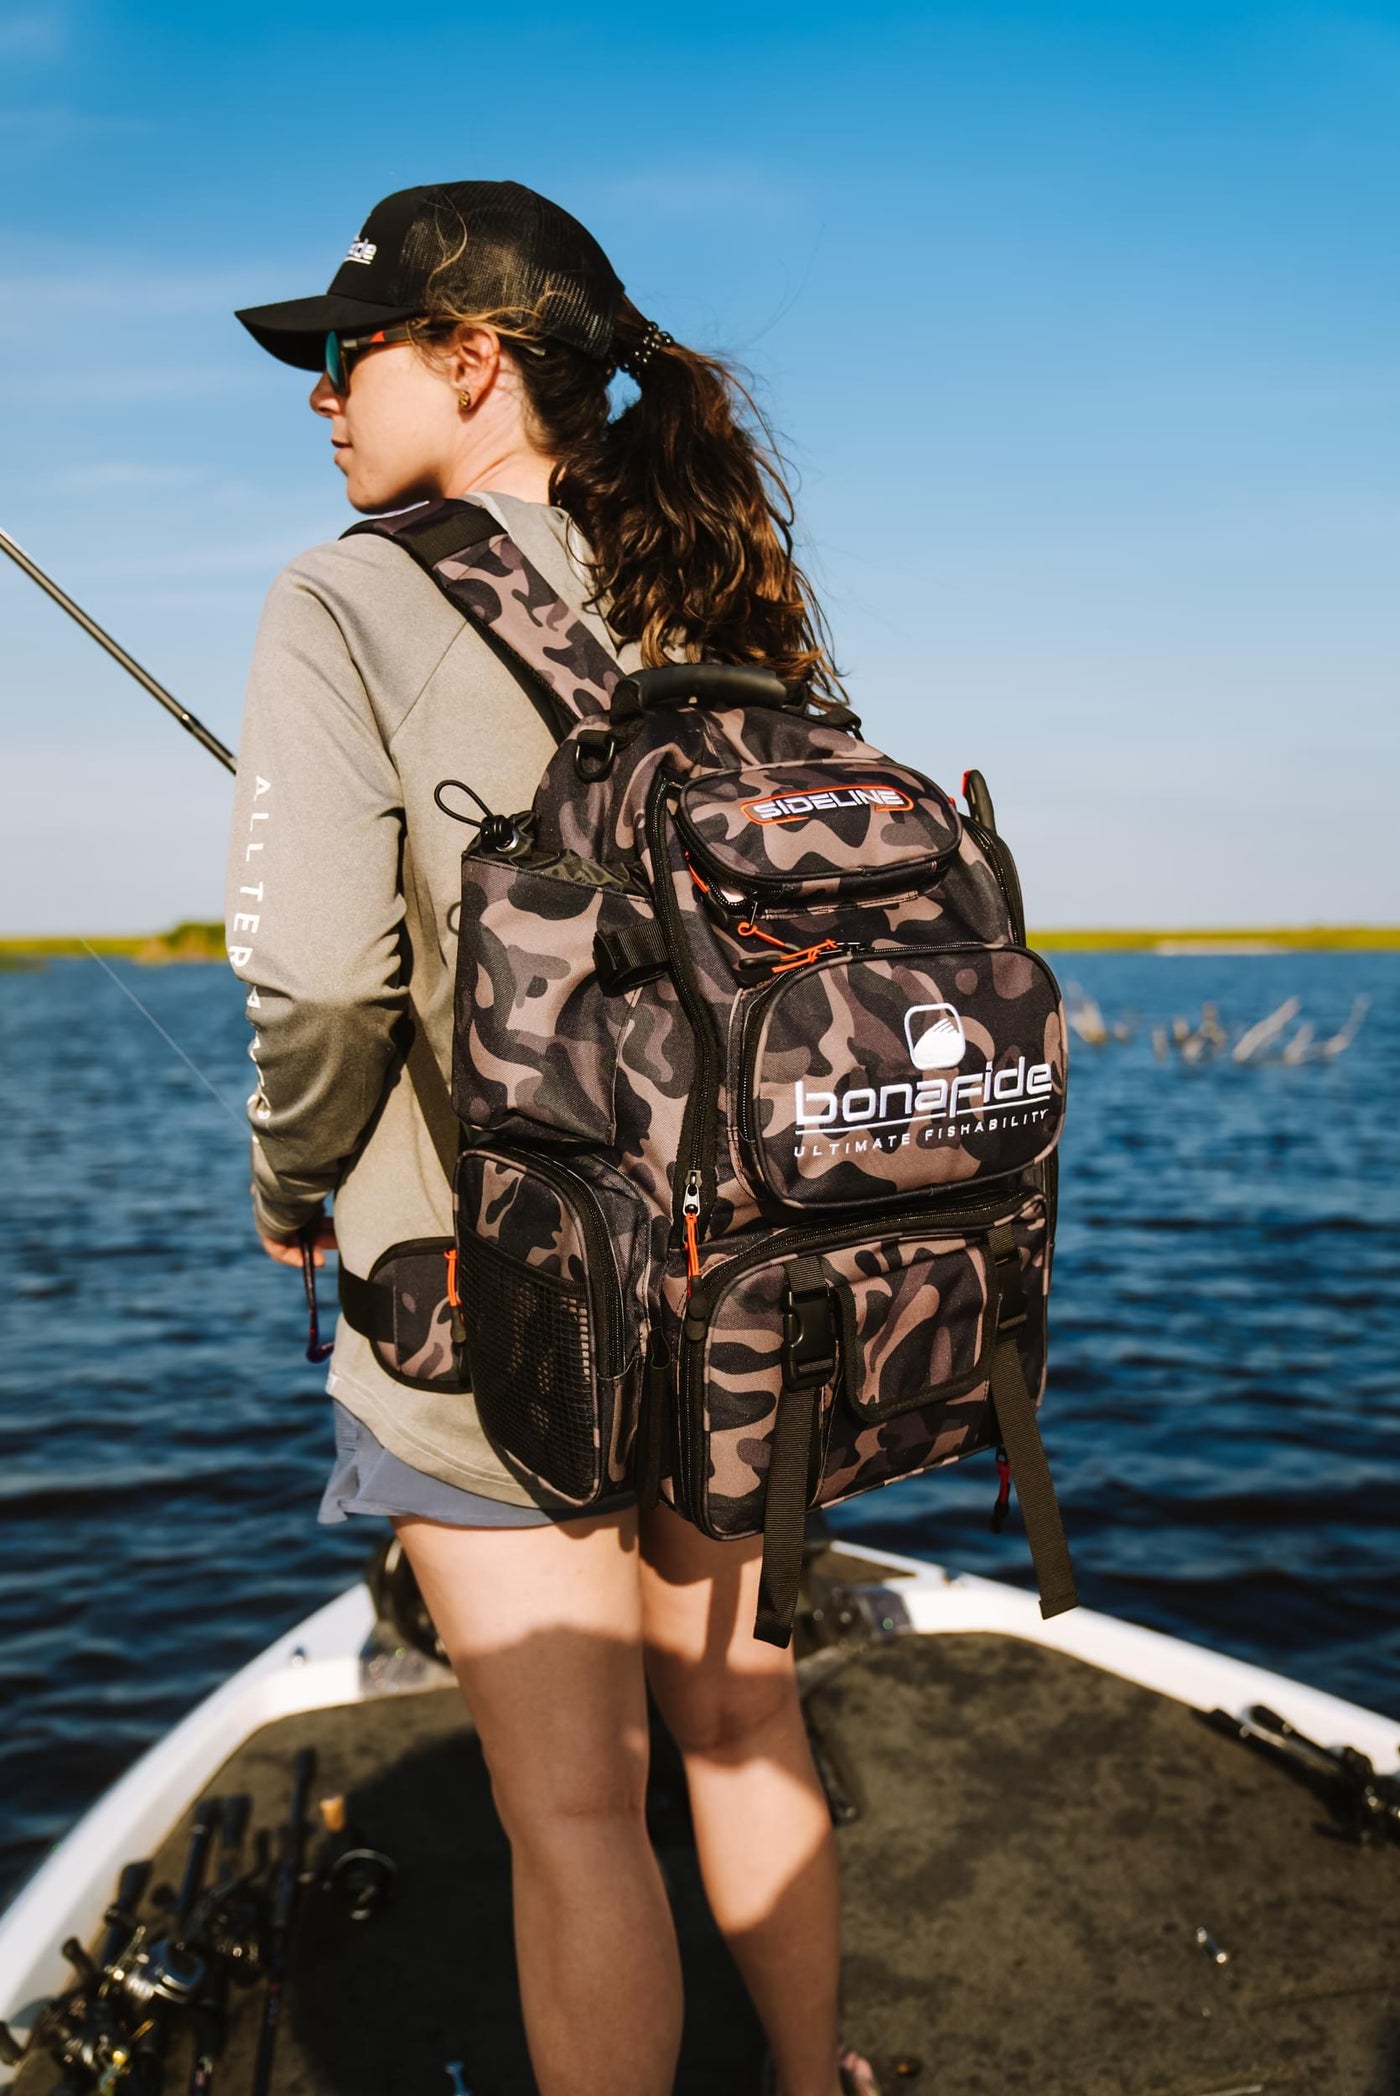 Sideline Backpack – Bonafide Fishing